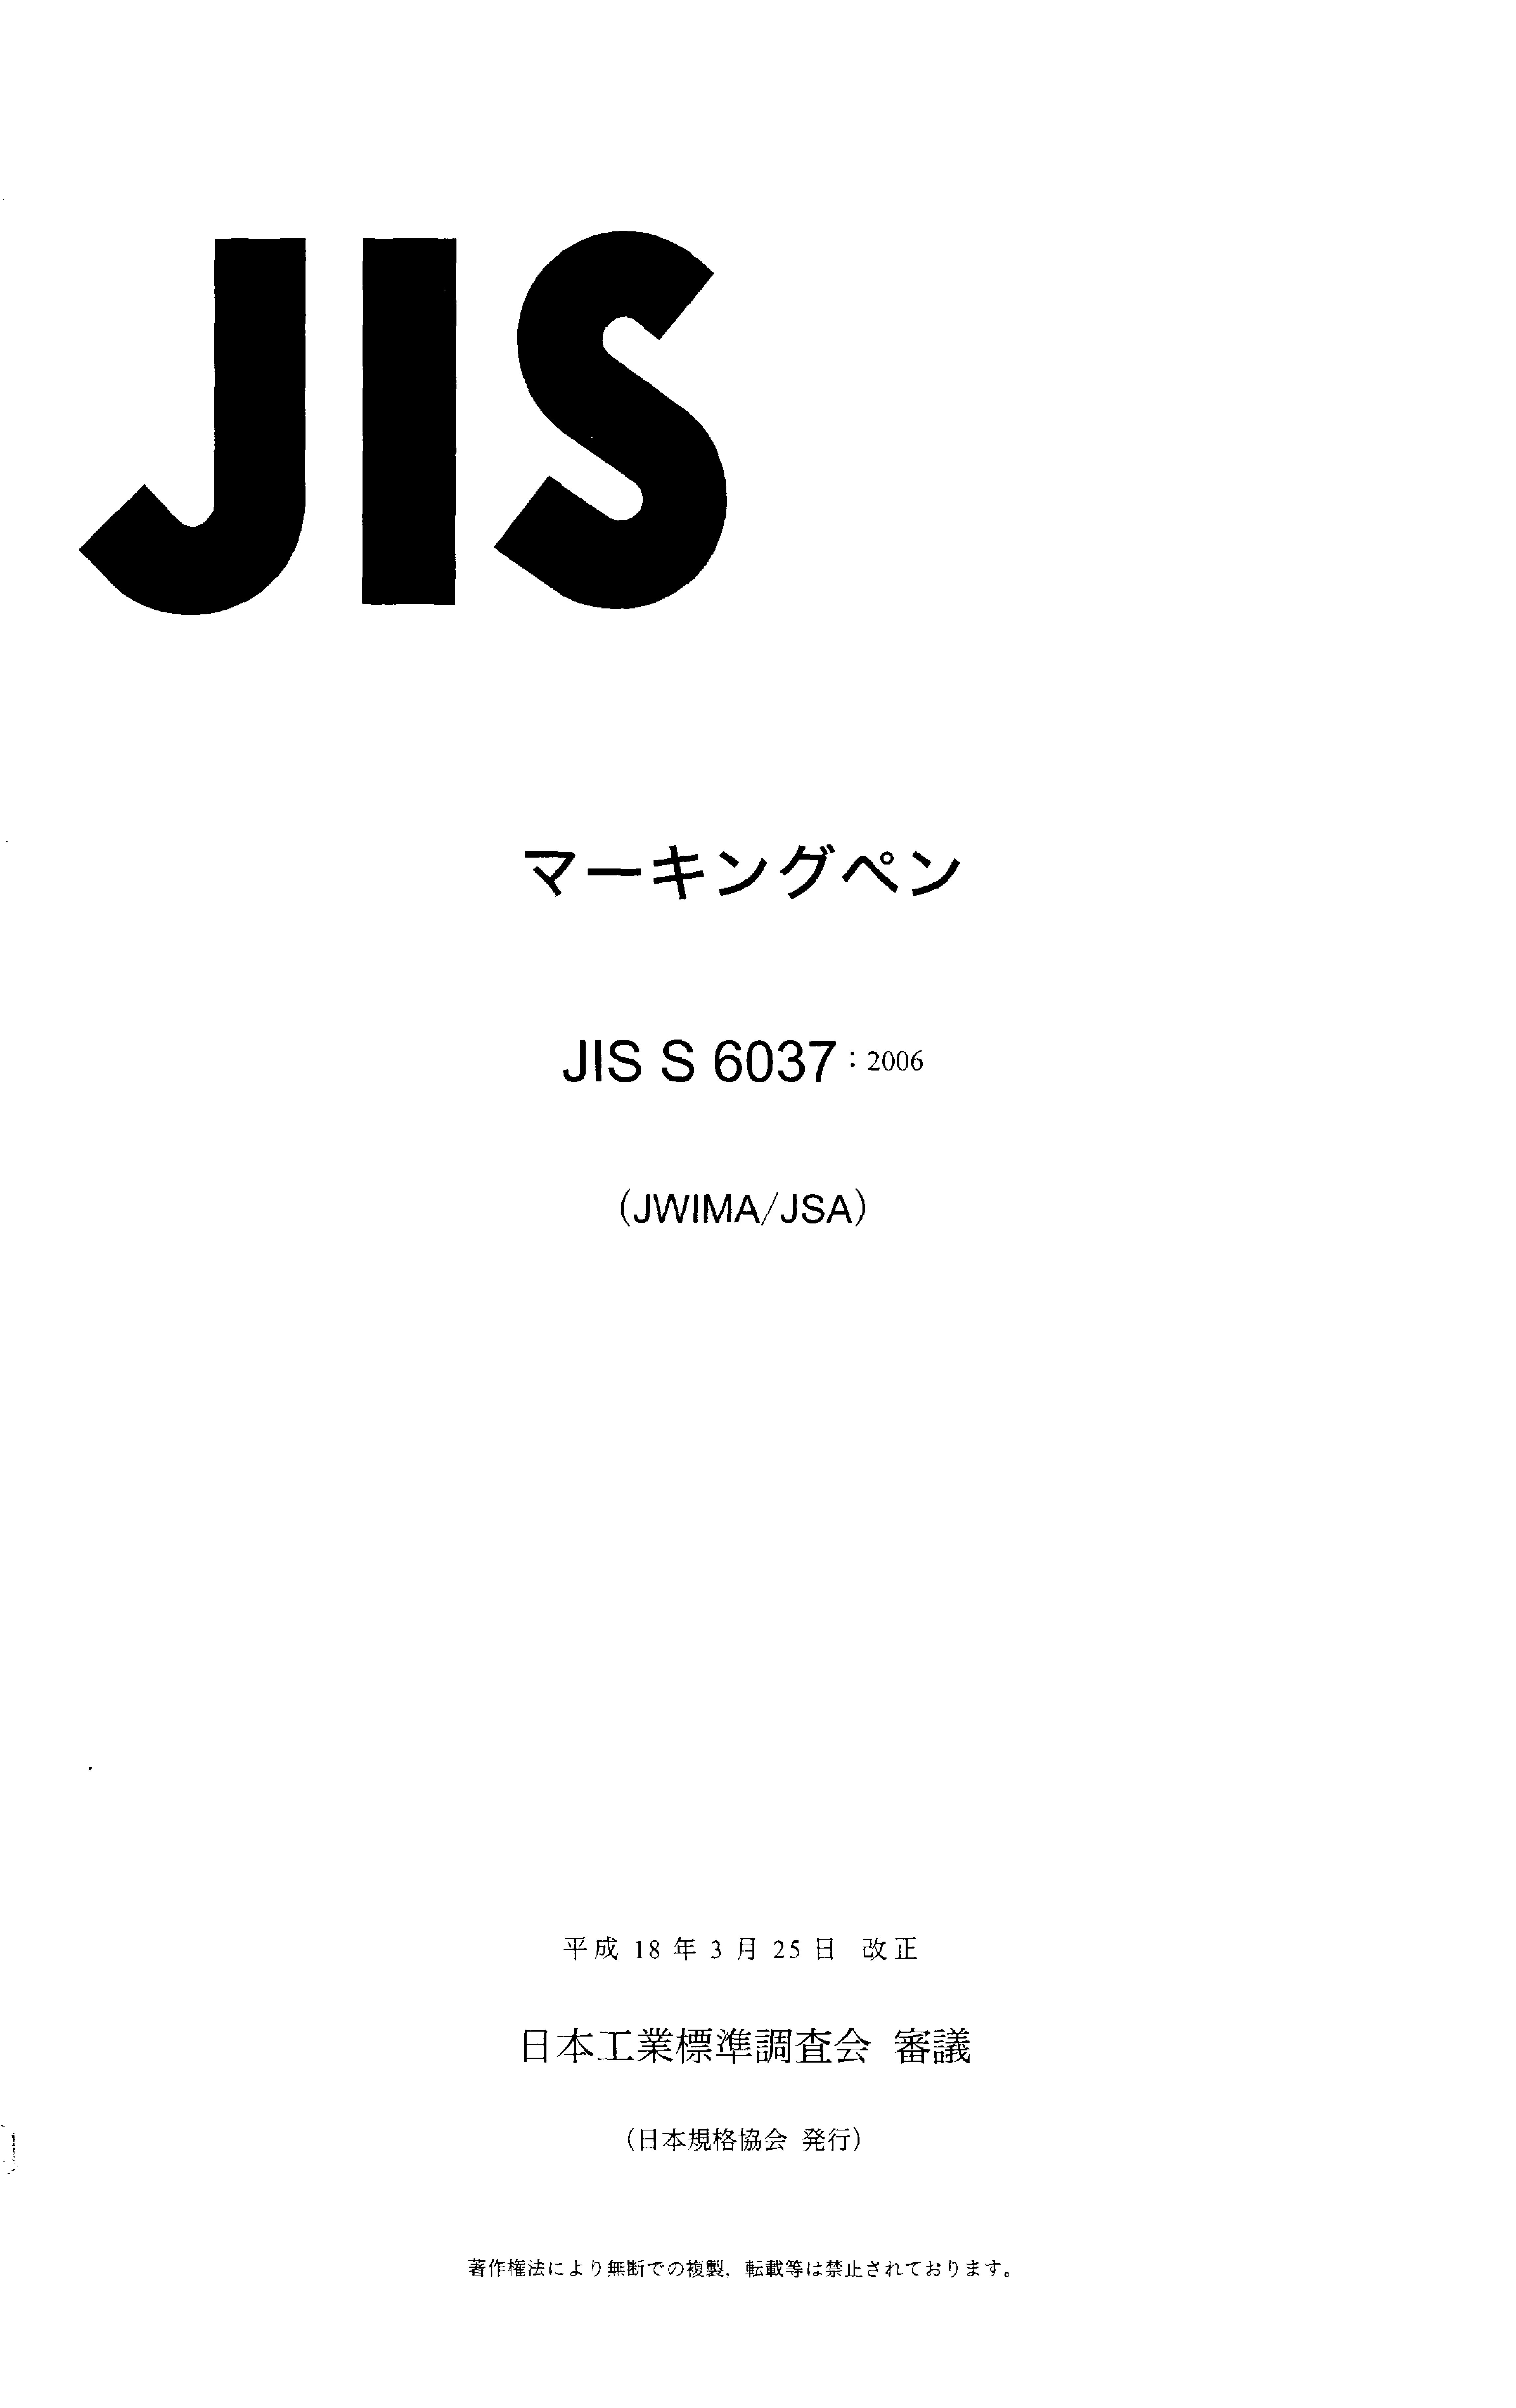 JIS S 6037:2006封面图